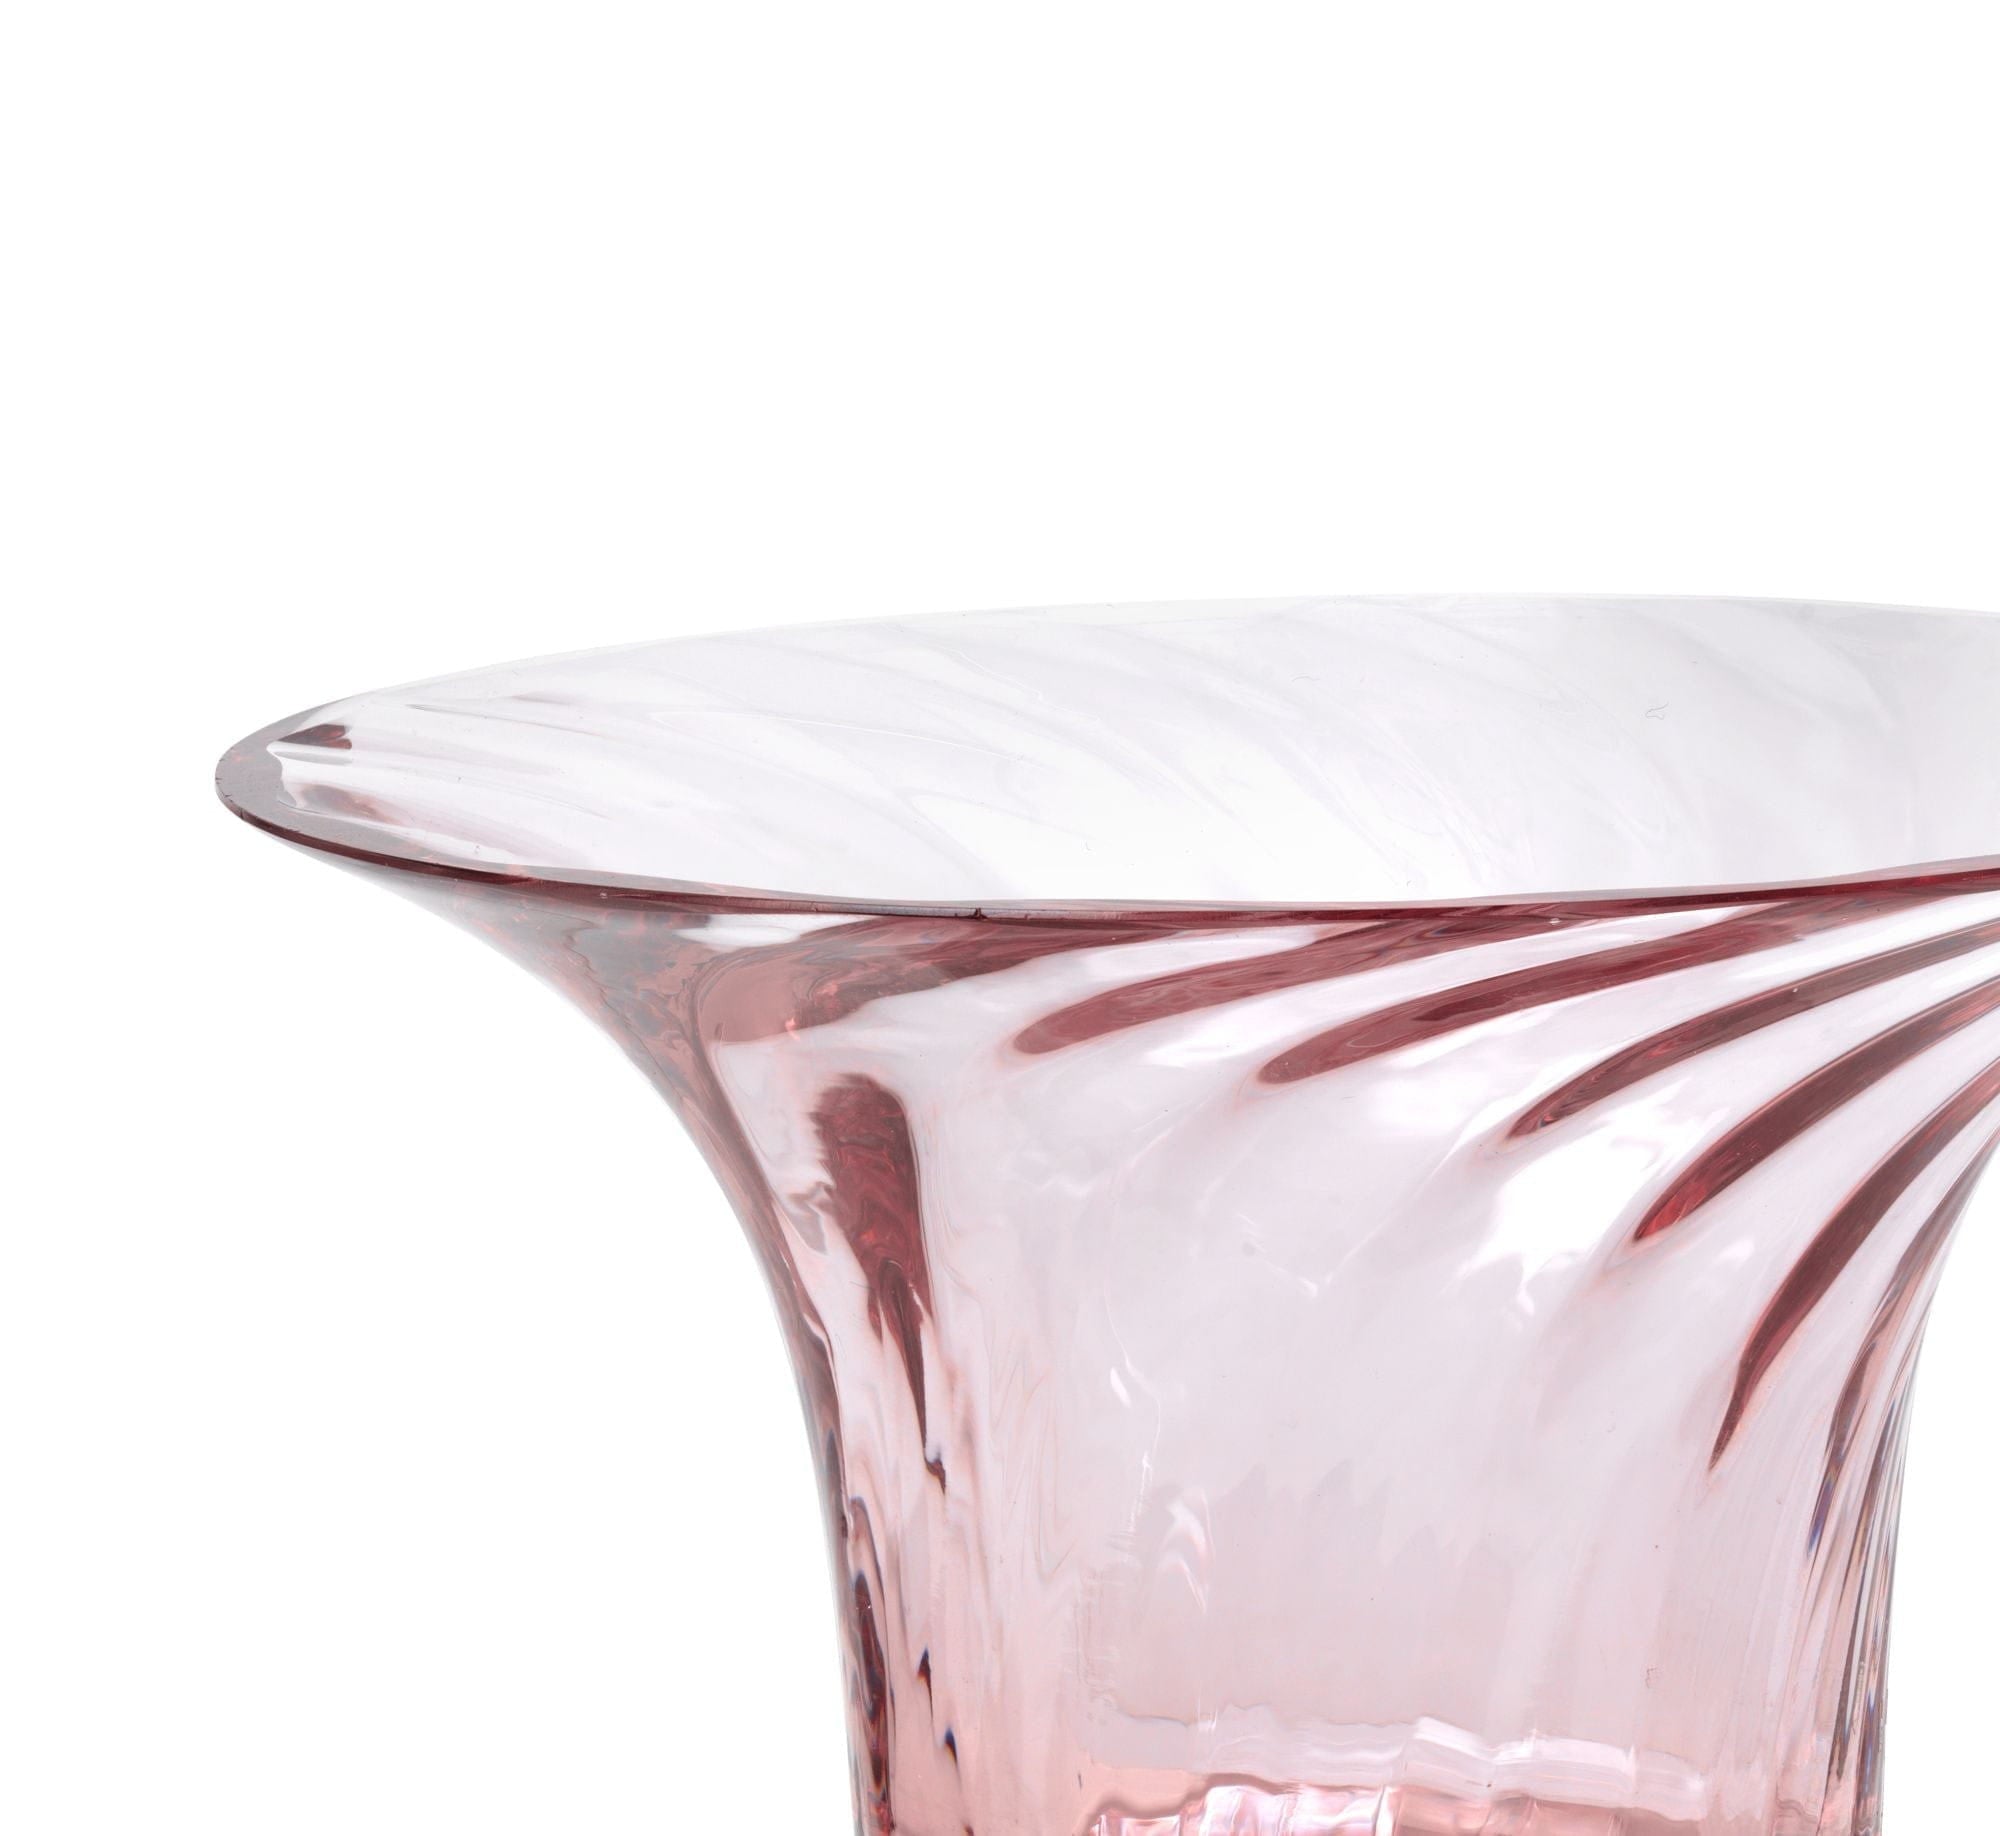 Rosendahl Filigran optisk jubilæums tealight indehaver ø11 cm, lyserød